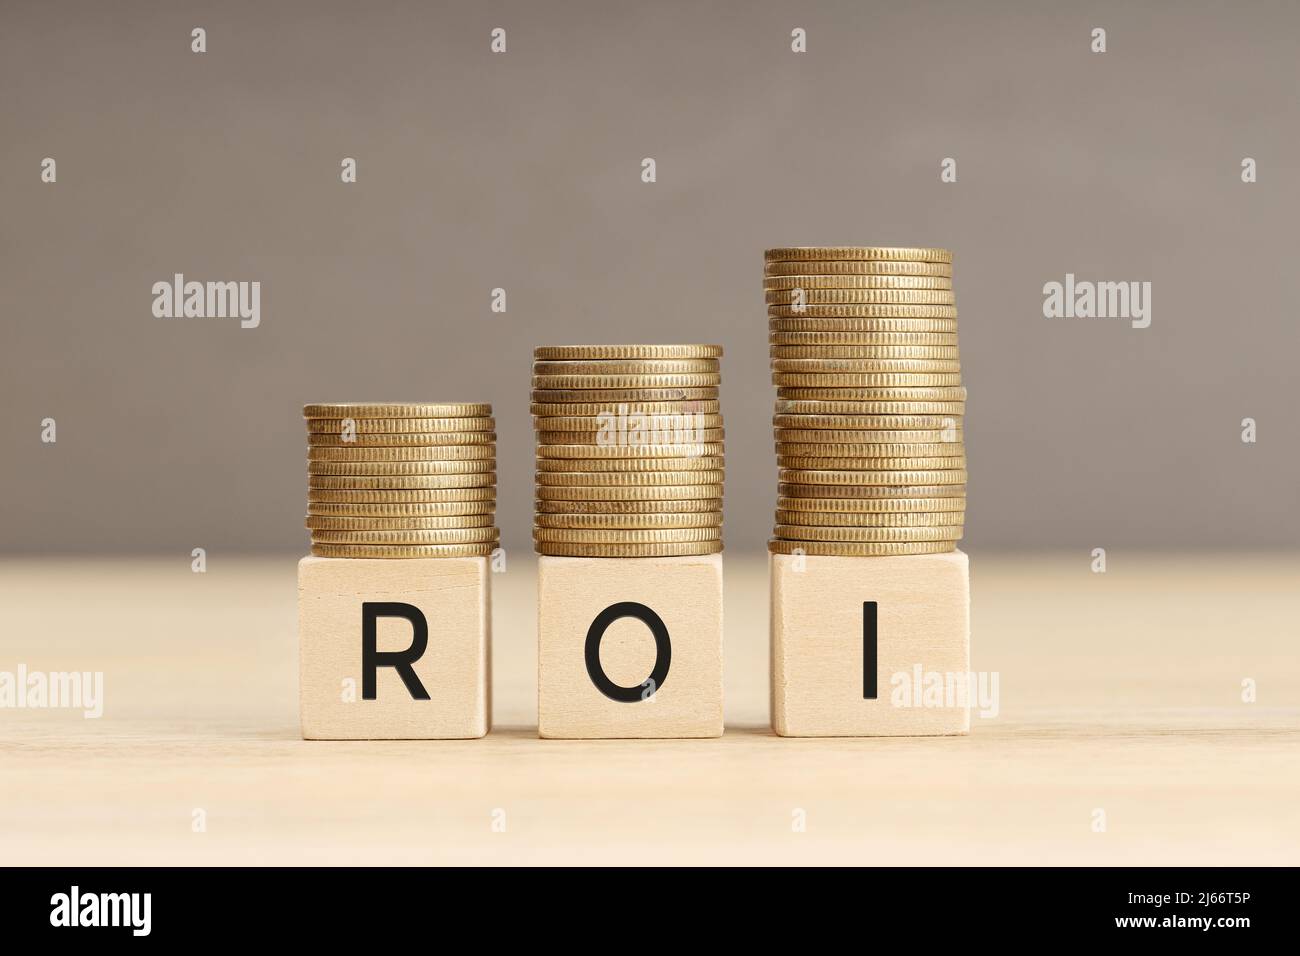 Palabra ROI en bloques de madera con monedas apiladas en pilas en aumento. Concepto de retorno de la inversión. Espacio de copia Foto de stock